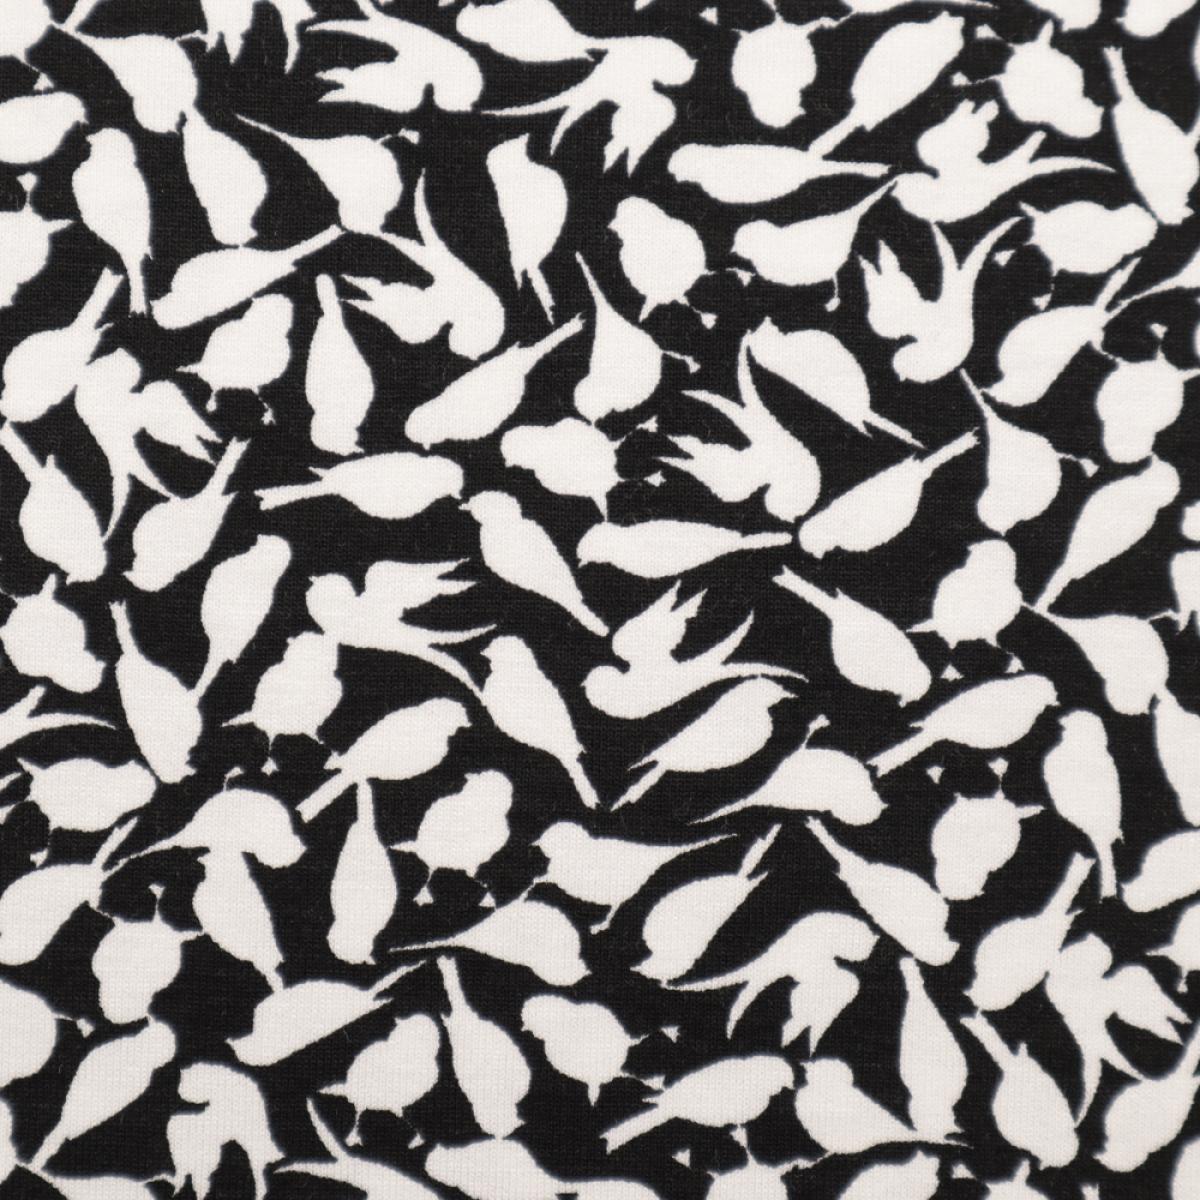 Stoff Viskose Jersey mit Vögel Design schwarz weiß Kleiderstoff Kinderstoff